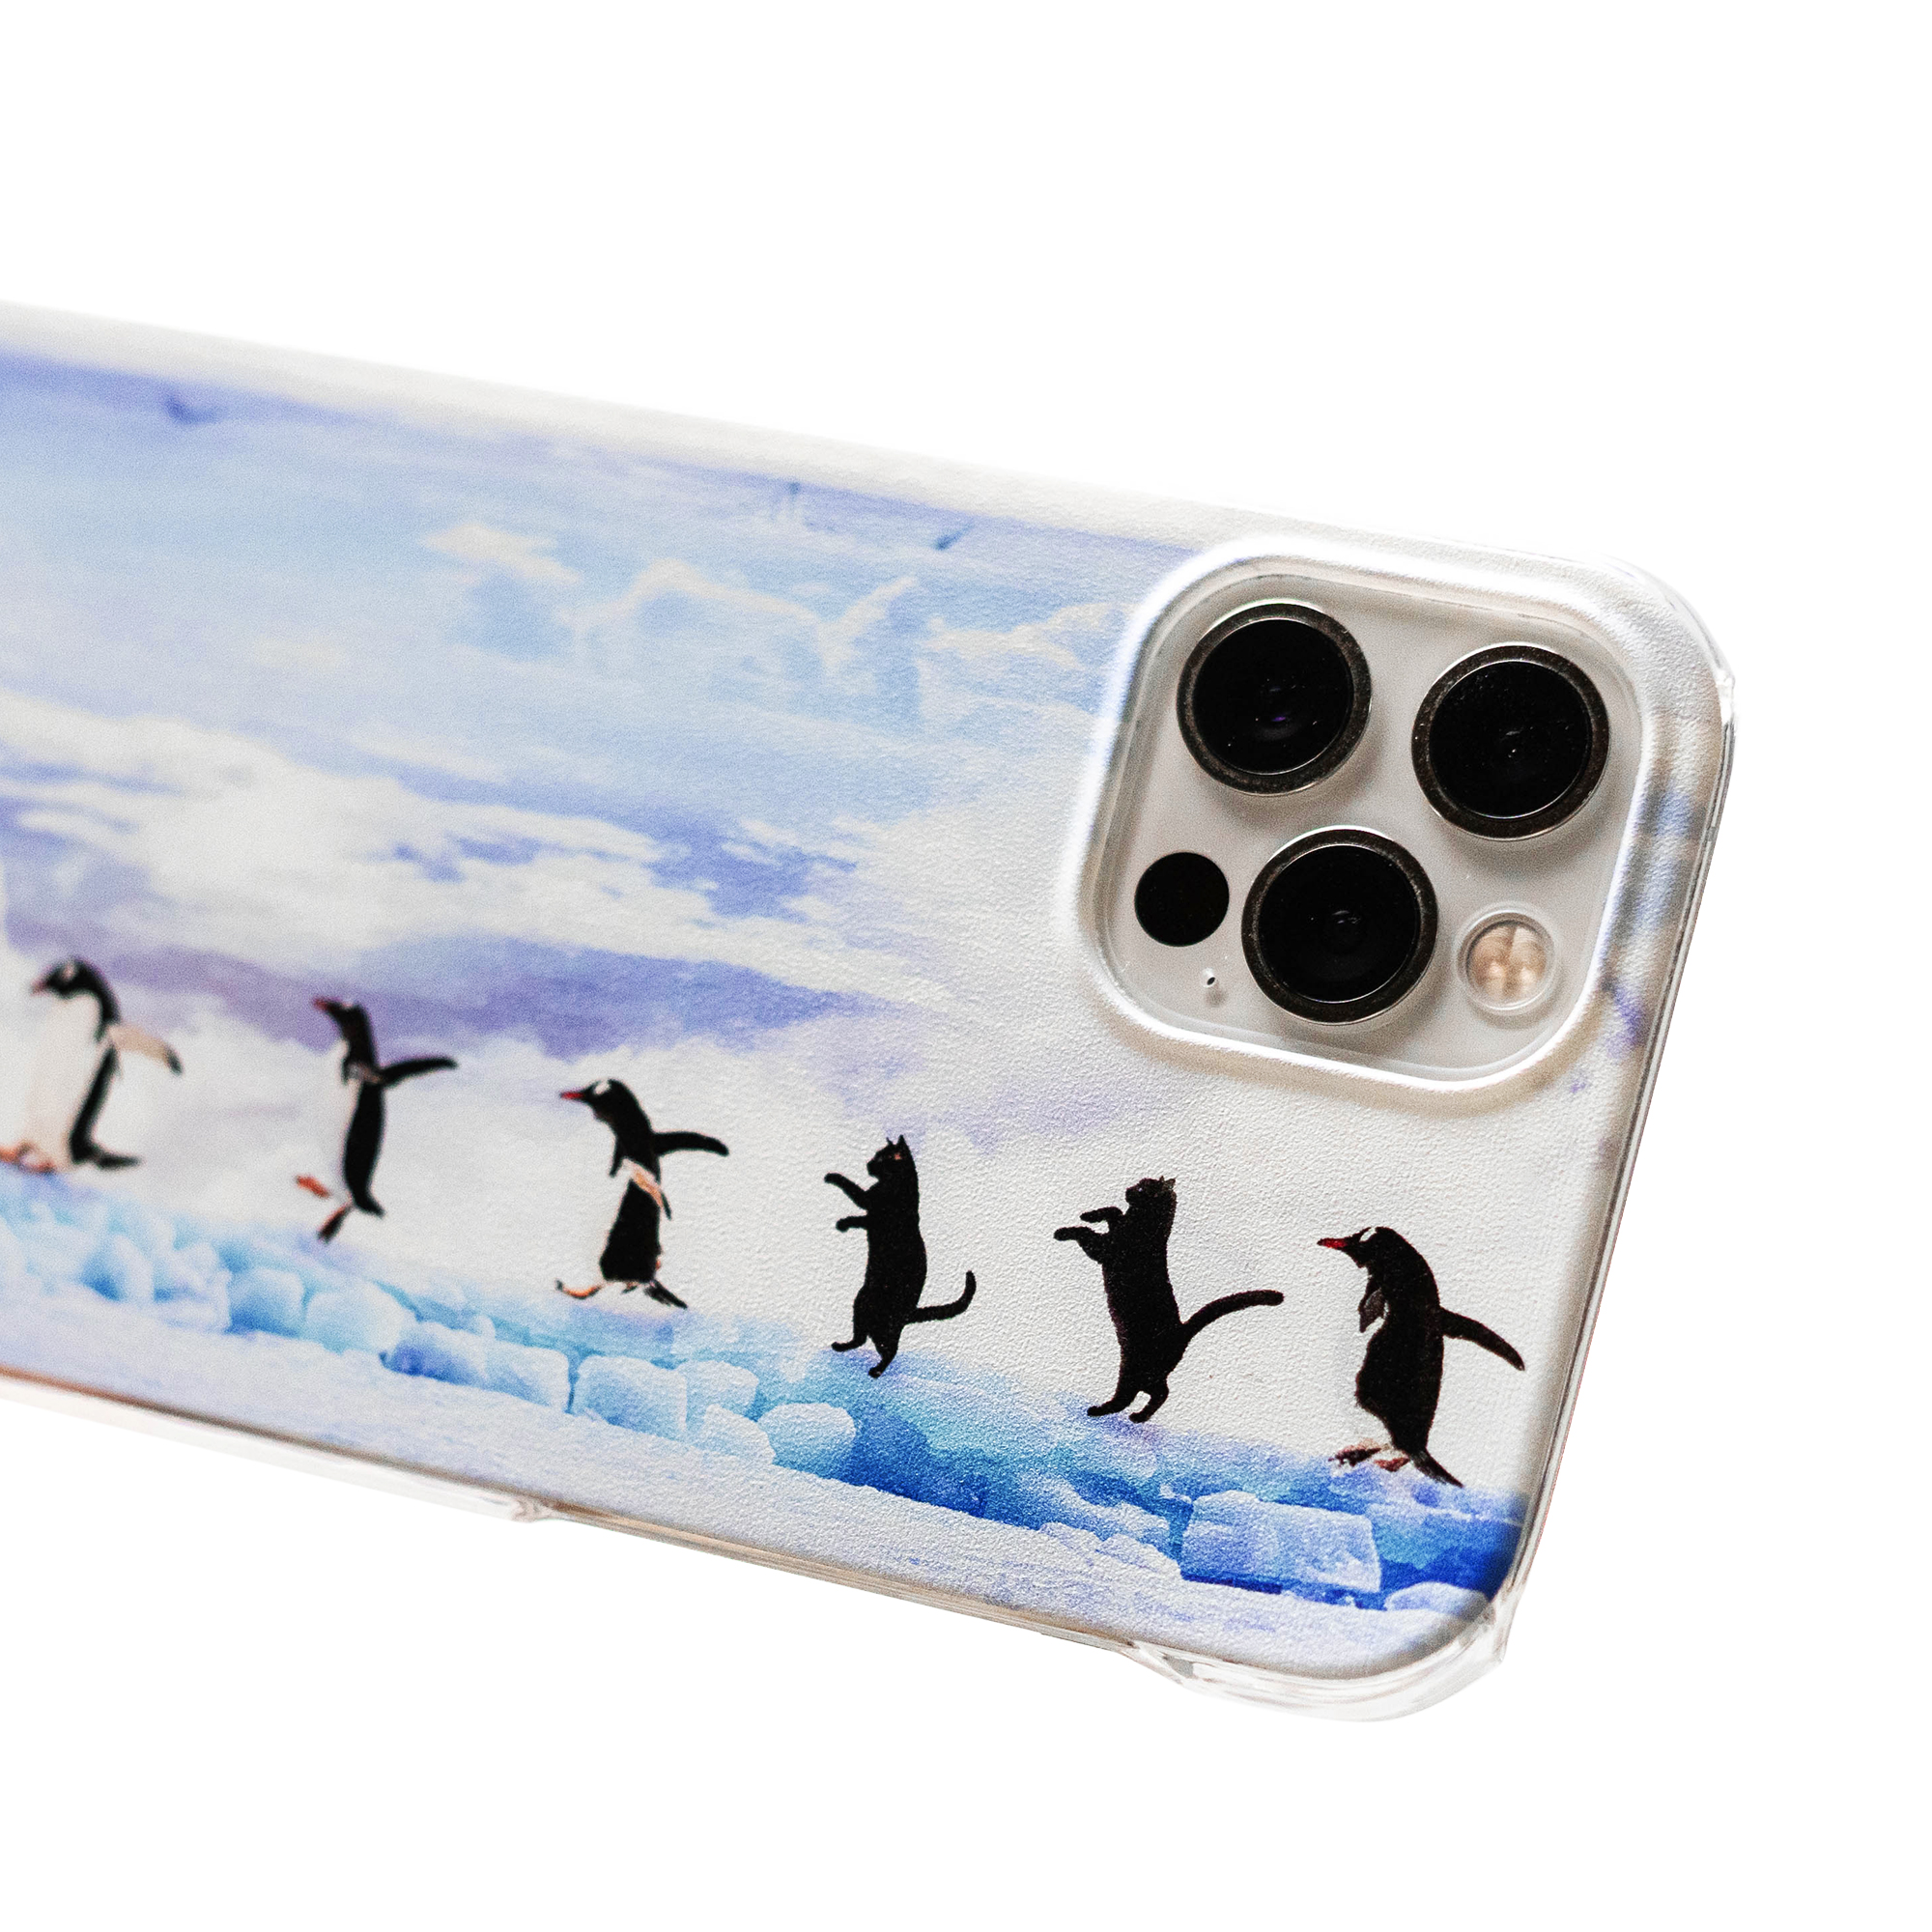 注文後の変更キャンセル返品 Iphone 11 Pro 泳ぐ ペンギン スマホケース アートケース スマートフォン カバー Seiwa Hd Com